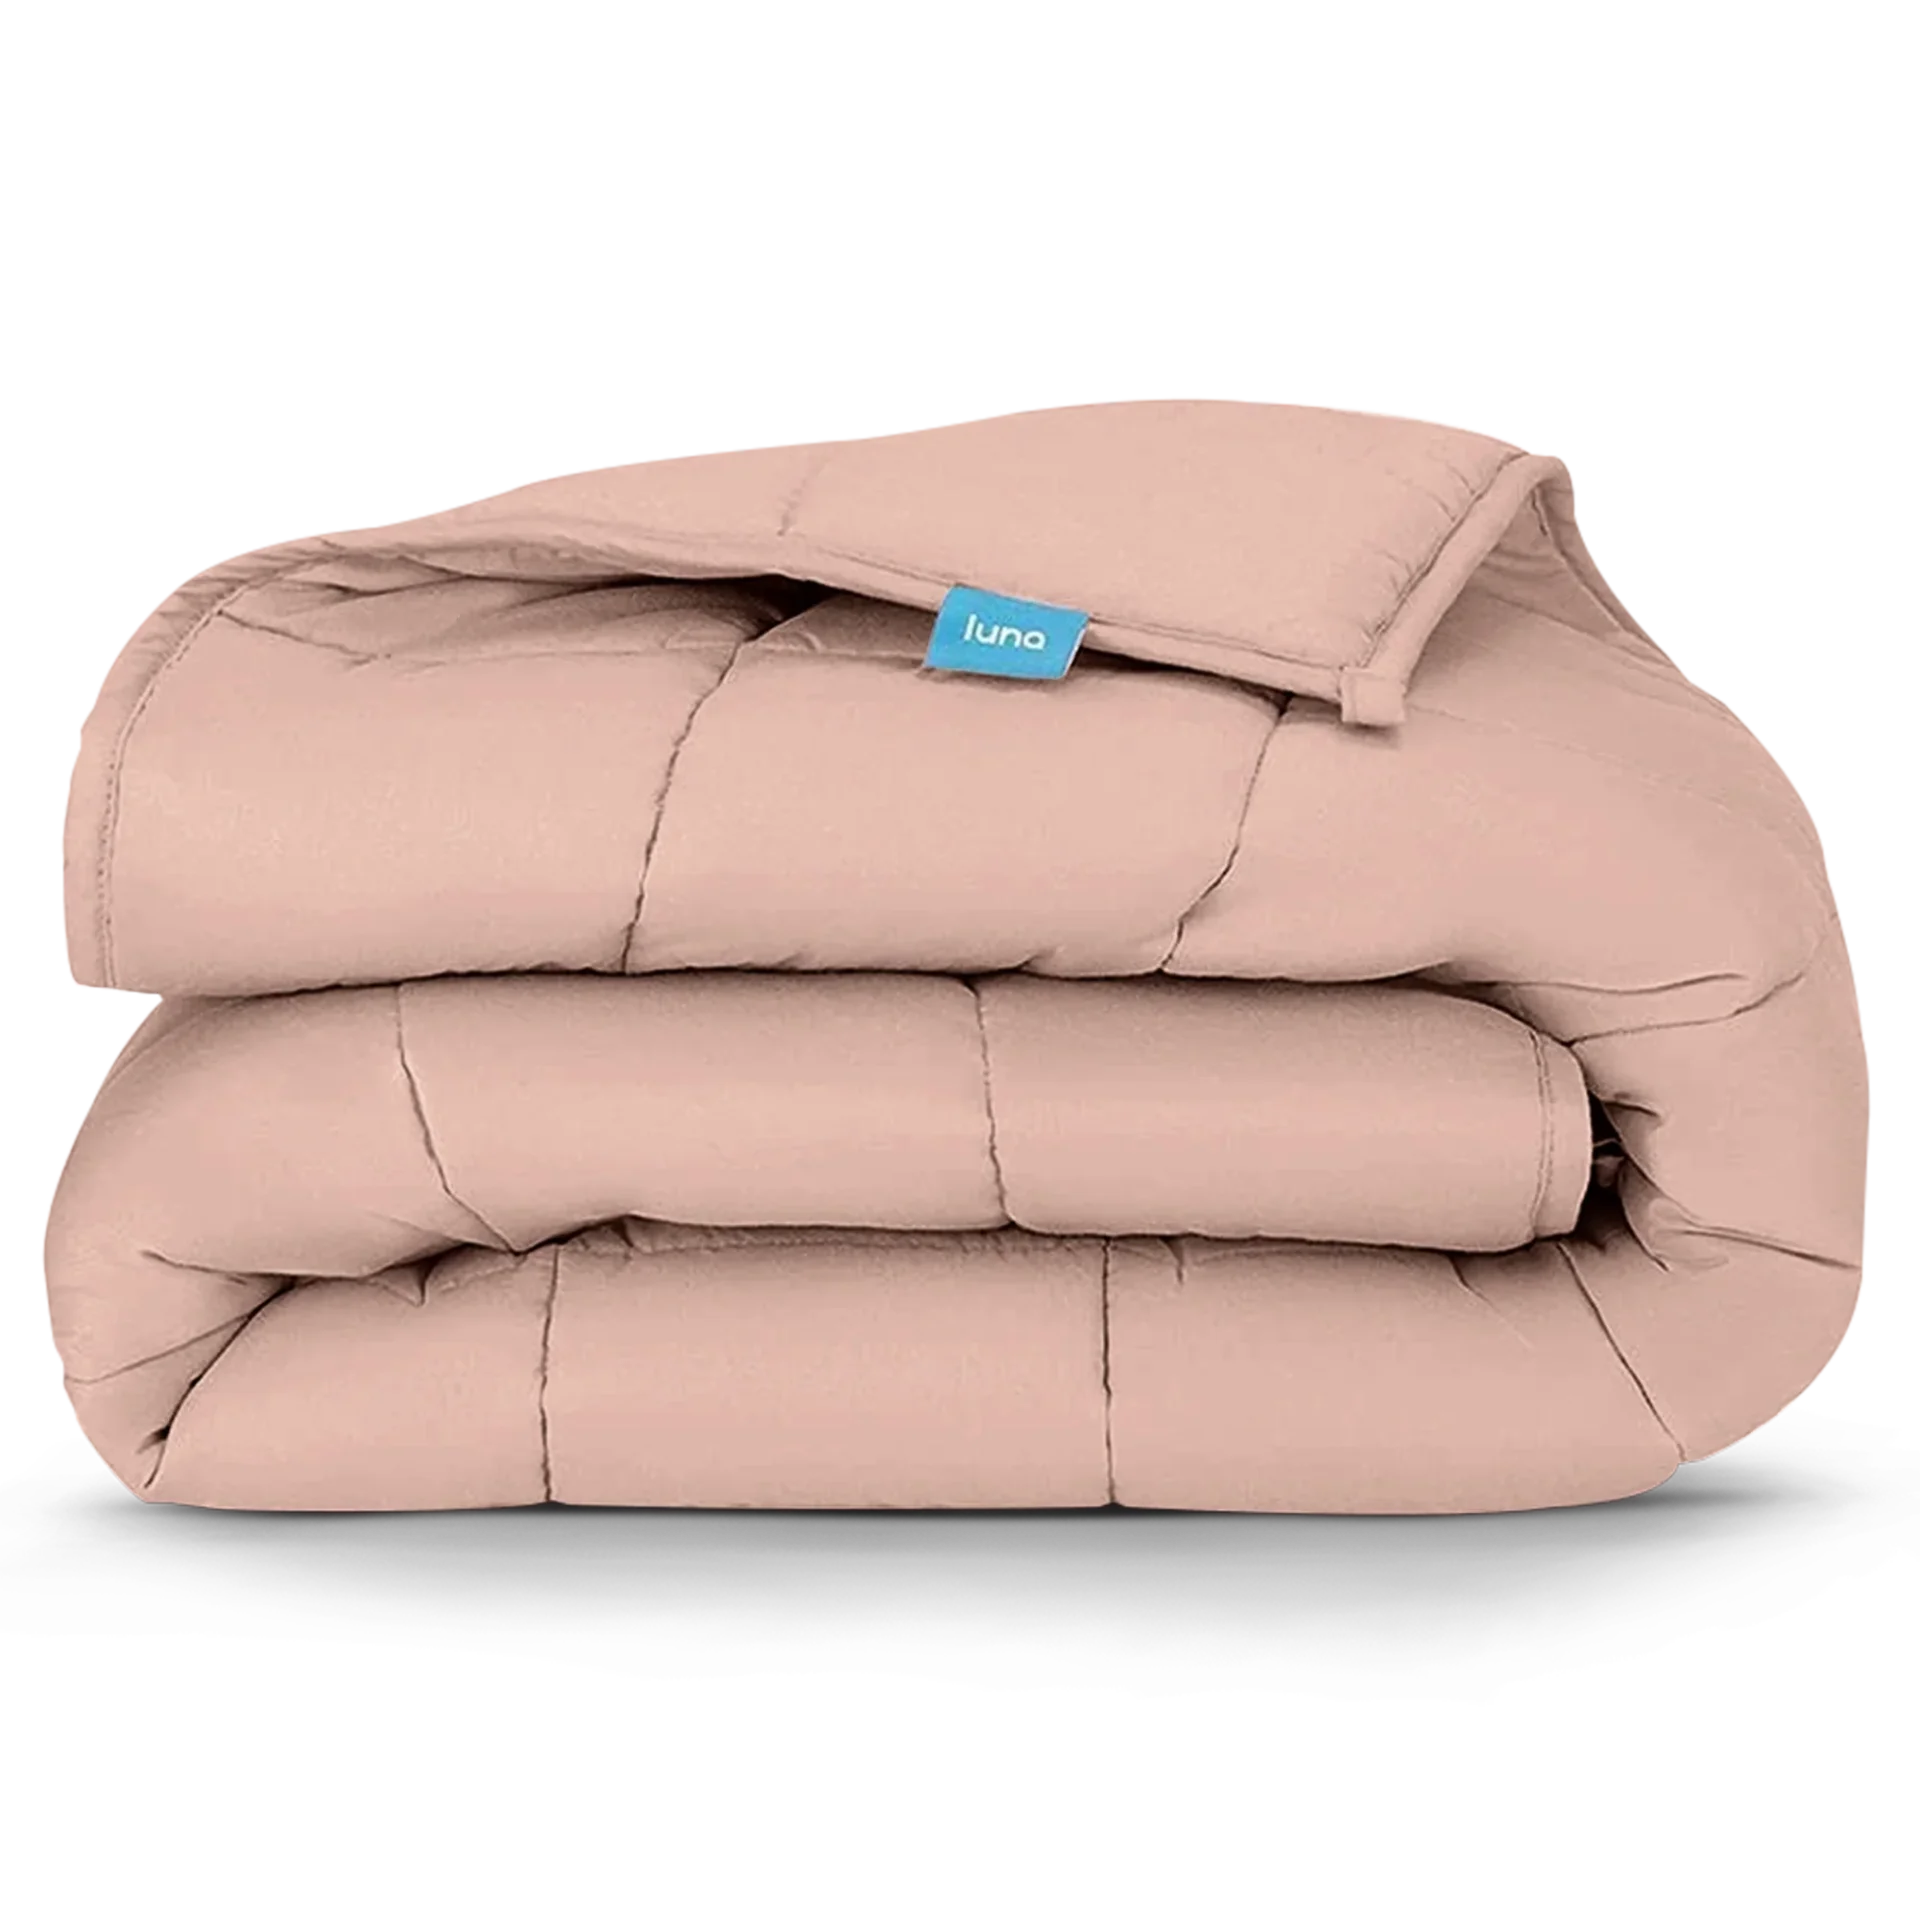 Folded Luna cozy comfort cooling blanket in pink